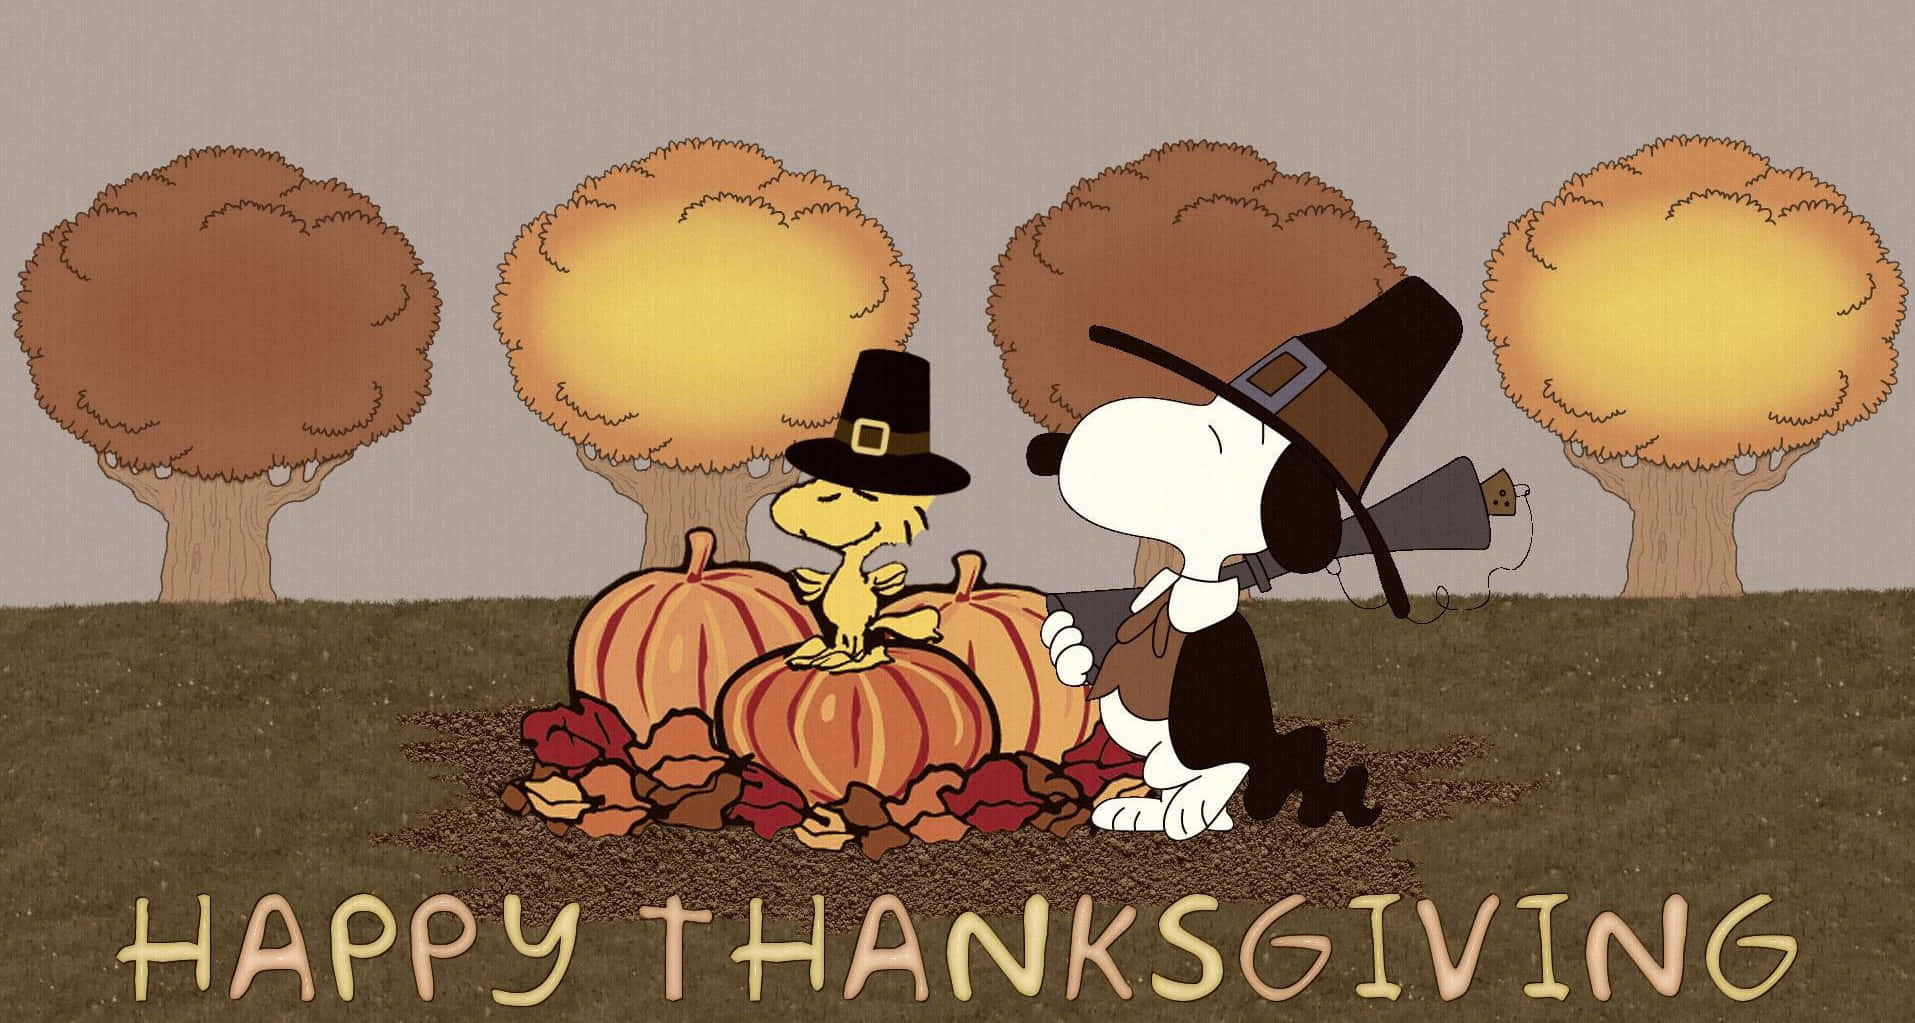 Fondode Alta Resolución De Thanksgiving Con Snoopy Y Woodstock.